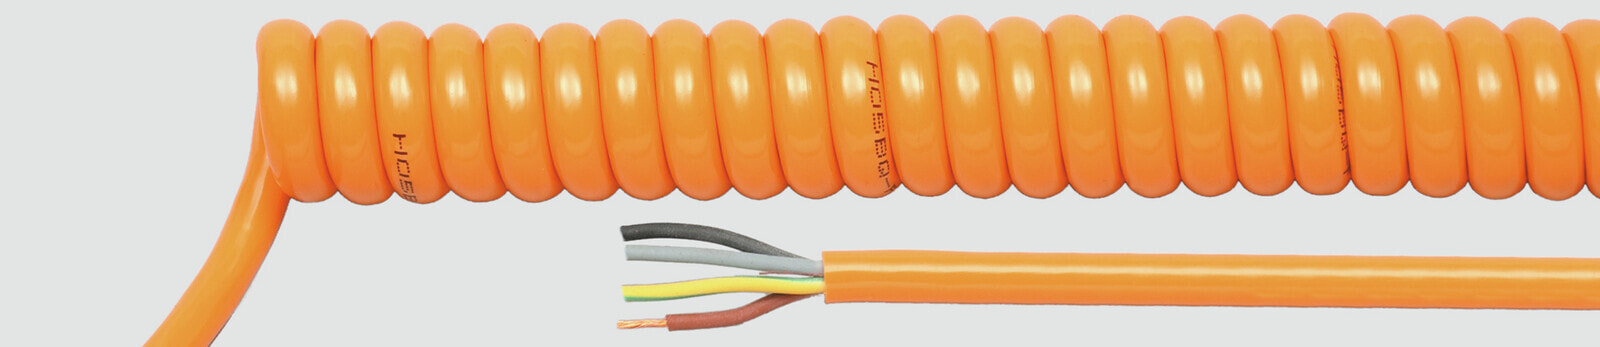 Helukabel 85416 - Low voltage cable - Orange - Cooper - 1.5 mm² - 1108.8 kg/km - -25 - 70 °C